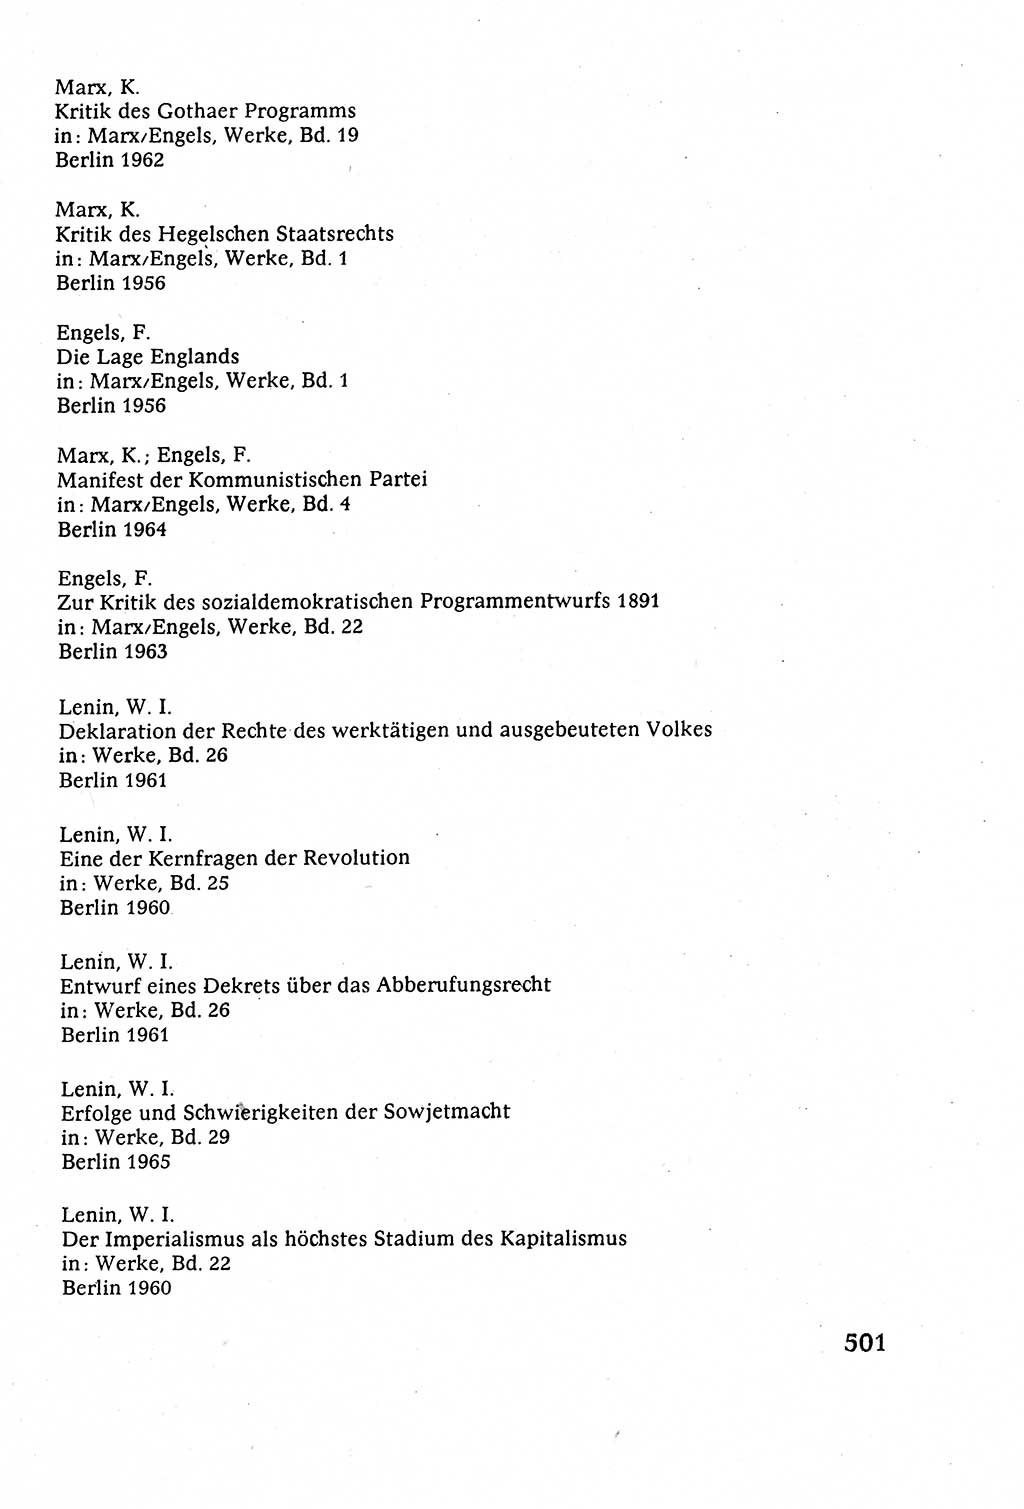 Staatsrecht der DDR (Deutsche Demokratische Republik), Lehrbuch 1977, Seite 501 (St.-R. DDR Lb. 1977, S. 501)